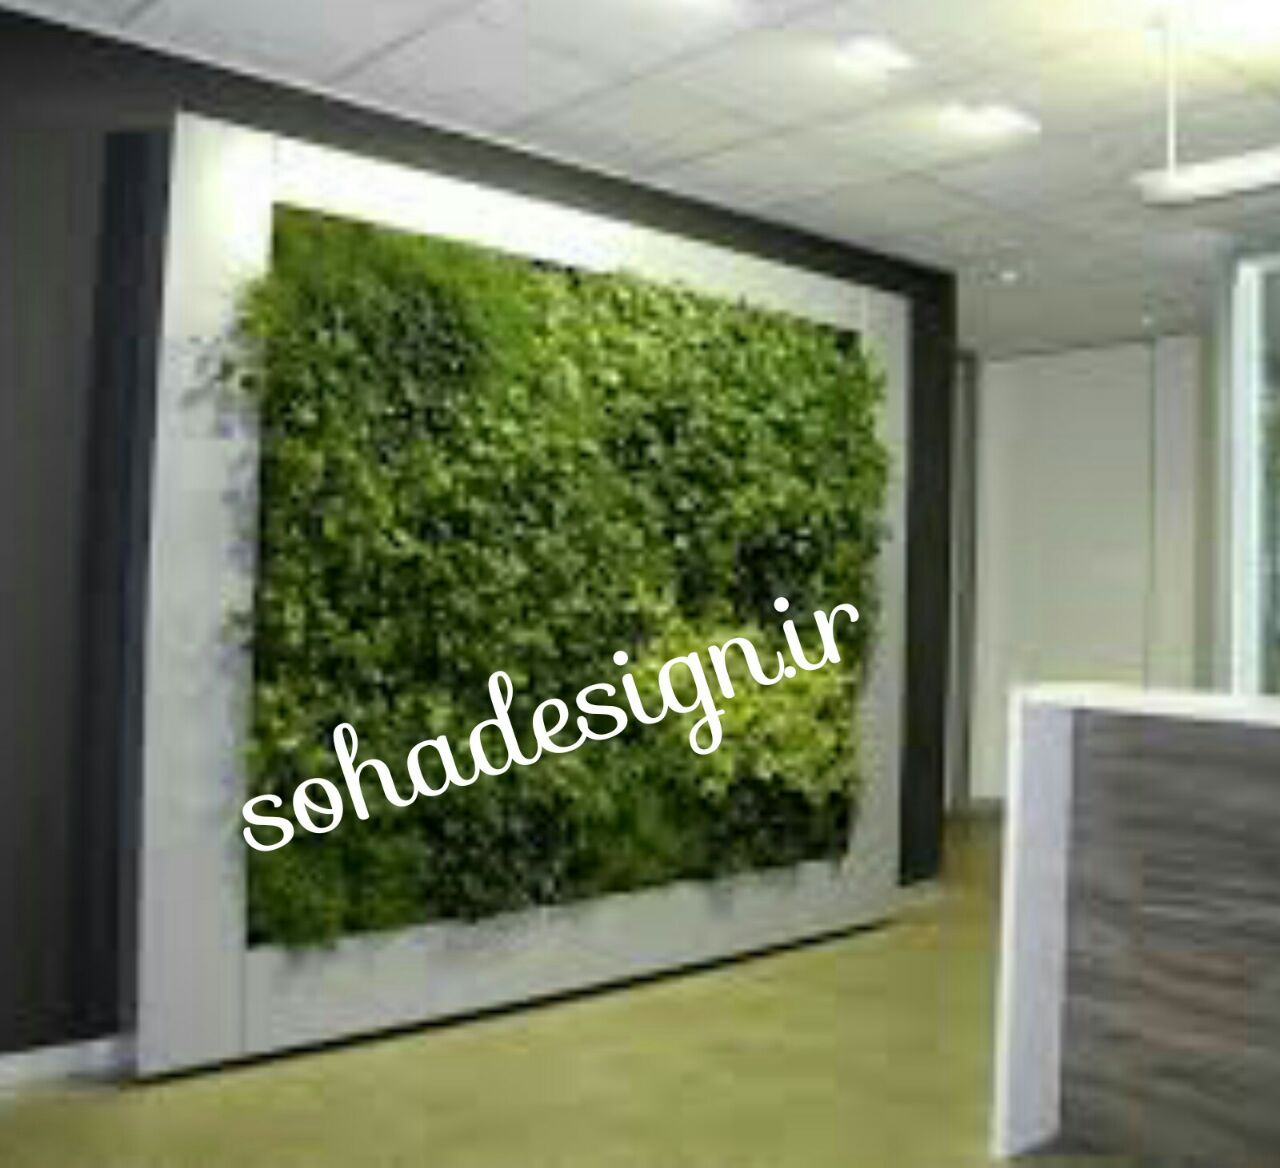 تابلو دیوارسبز|قیمت تابلو دیوار سبز|ساخت انواع دیوار سبز|مهندس آقاخانی09123349420